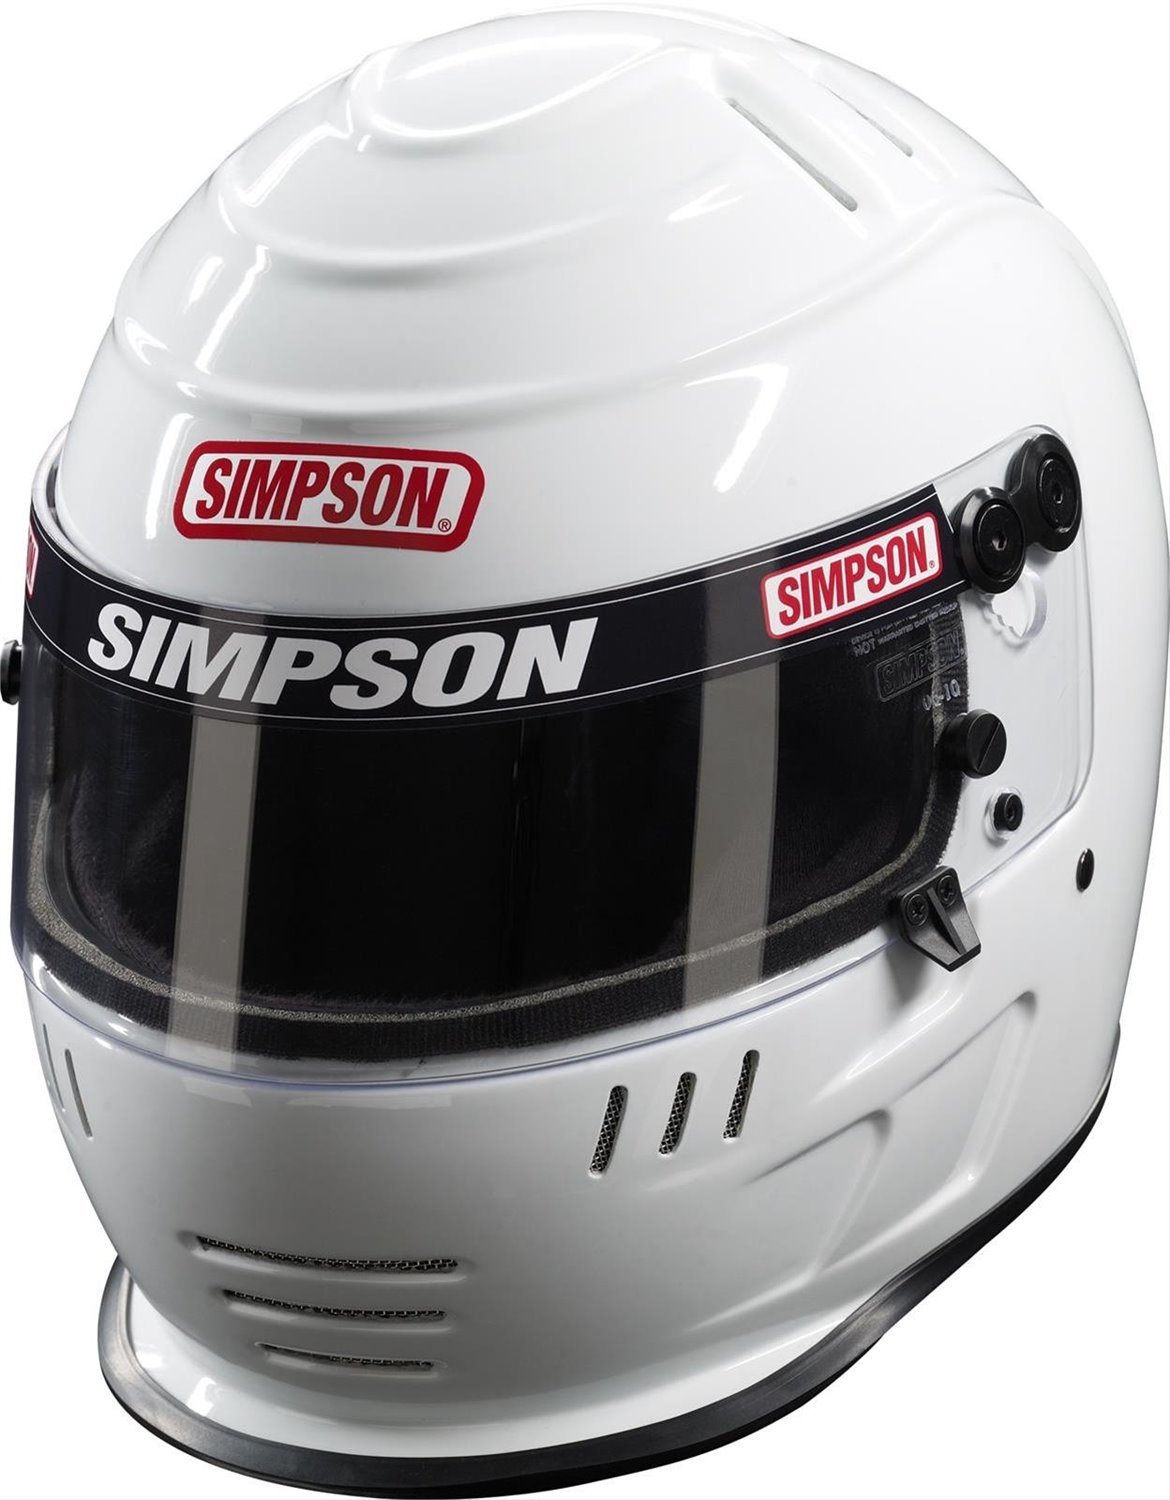 Speedway Shark Racing Helmet SA2020 Certified - Size: